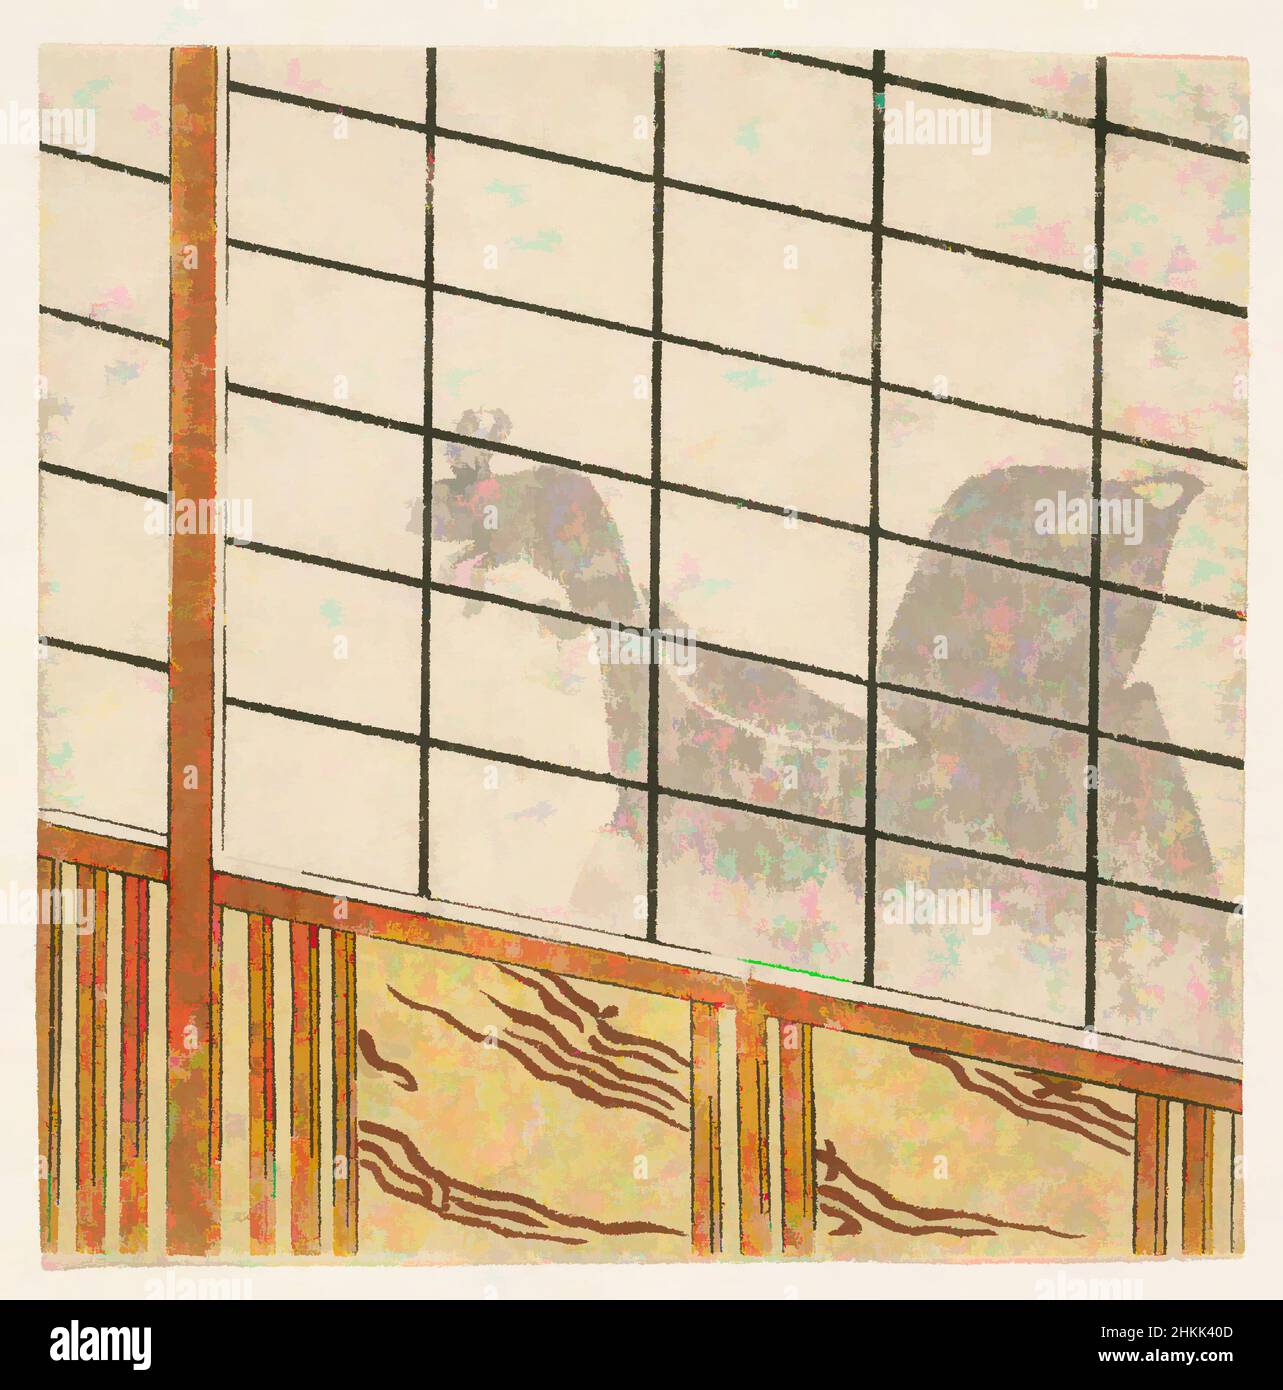 Arte ispirata a e-Goyomi, ombra dell'uomo su Shoji, stampa a blocchi di legno a colori su carta, Giappone, 1782-1785, periodo Edo, era Tenmei III, 4 11/16 x 4 3/4 pollici, 11,9 x 12 cm, opere classiche modernizzate da Artotop con un tocco di modernità. Forme, colore e valore, impatto visivo accattivante sulle emozioni artistiche attraverso la libertà delle opere d'arte in modo contemporaneo. Un messaggio senza tempo che persegue una nuova direzione selvaggiamente creativa. Artisti che si rivolgono al supporto digitale e creano l'NFT Artotop Foto Stock